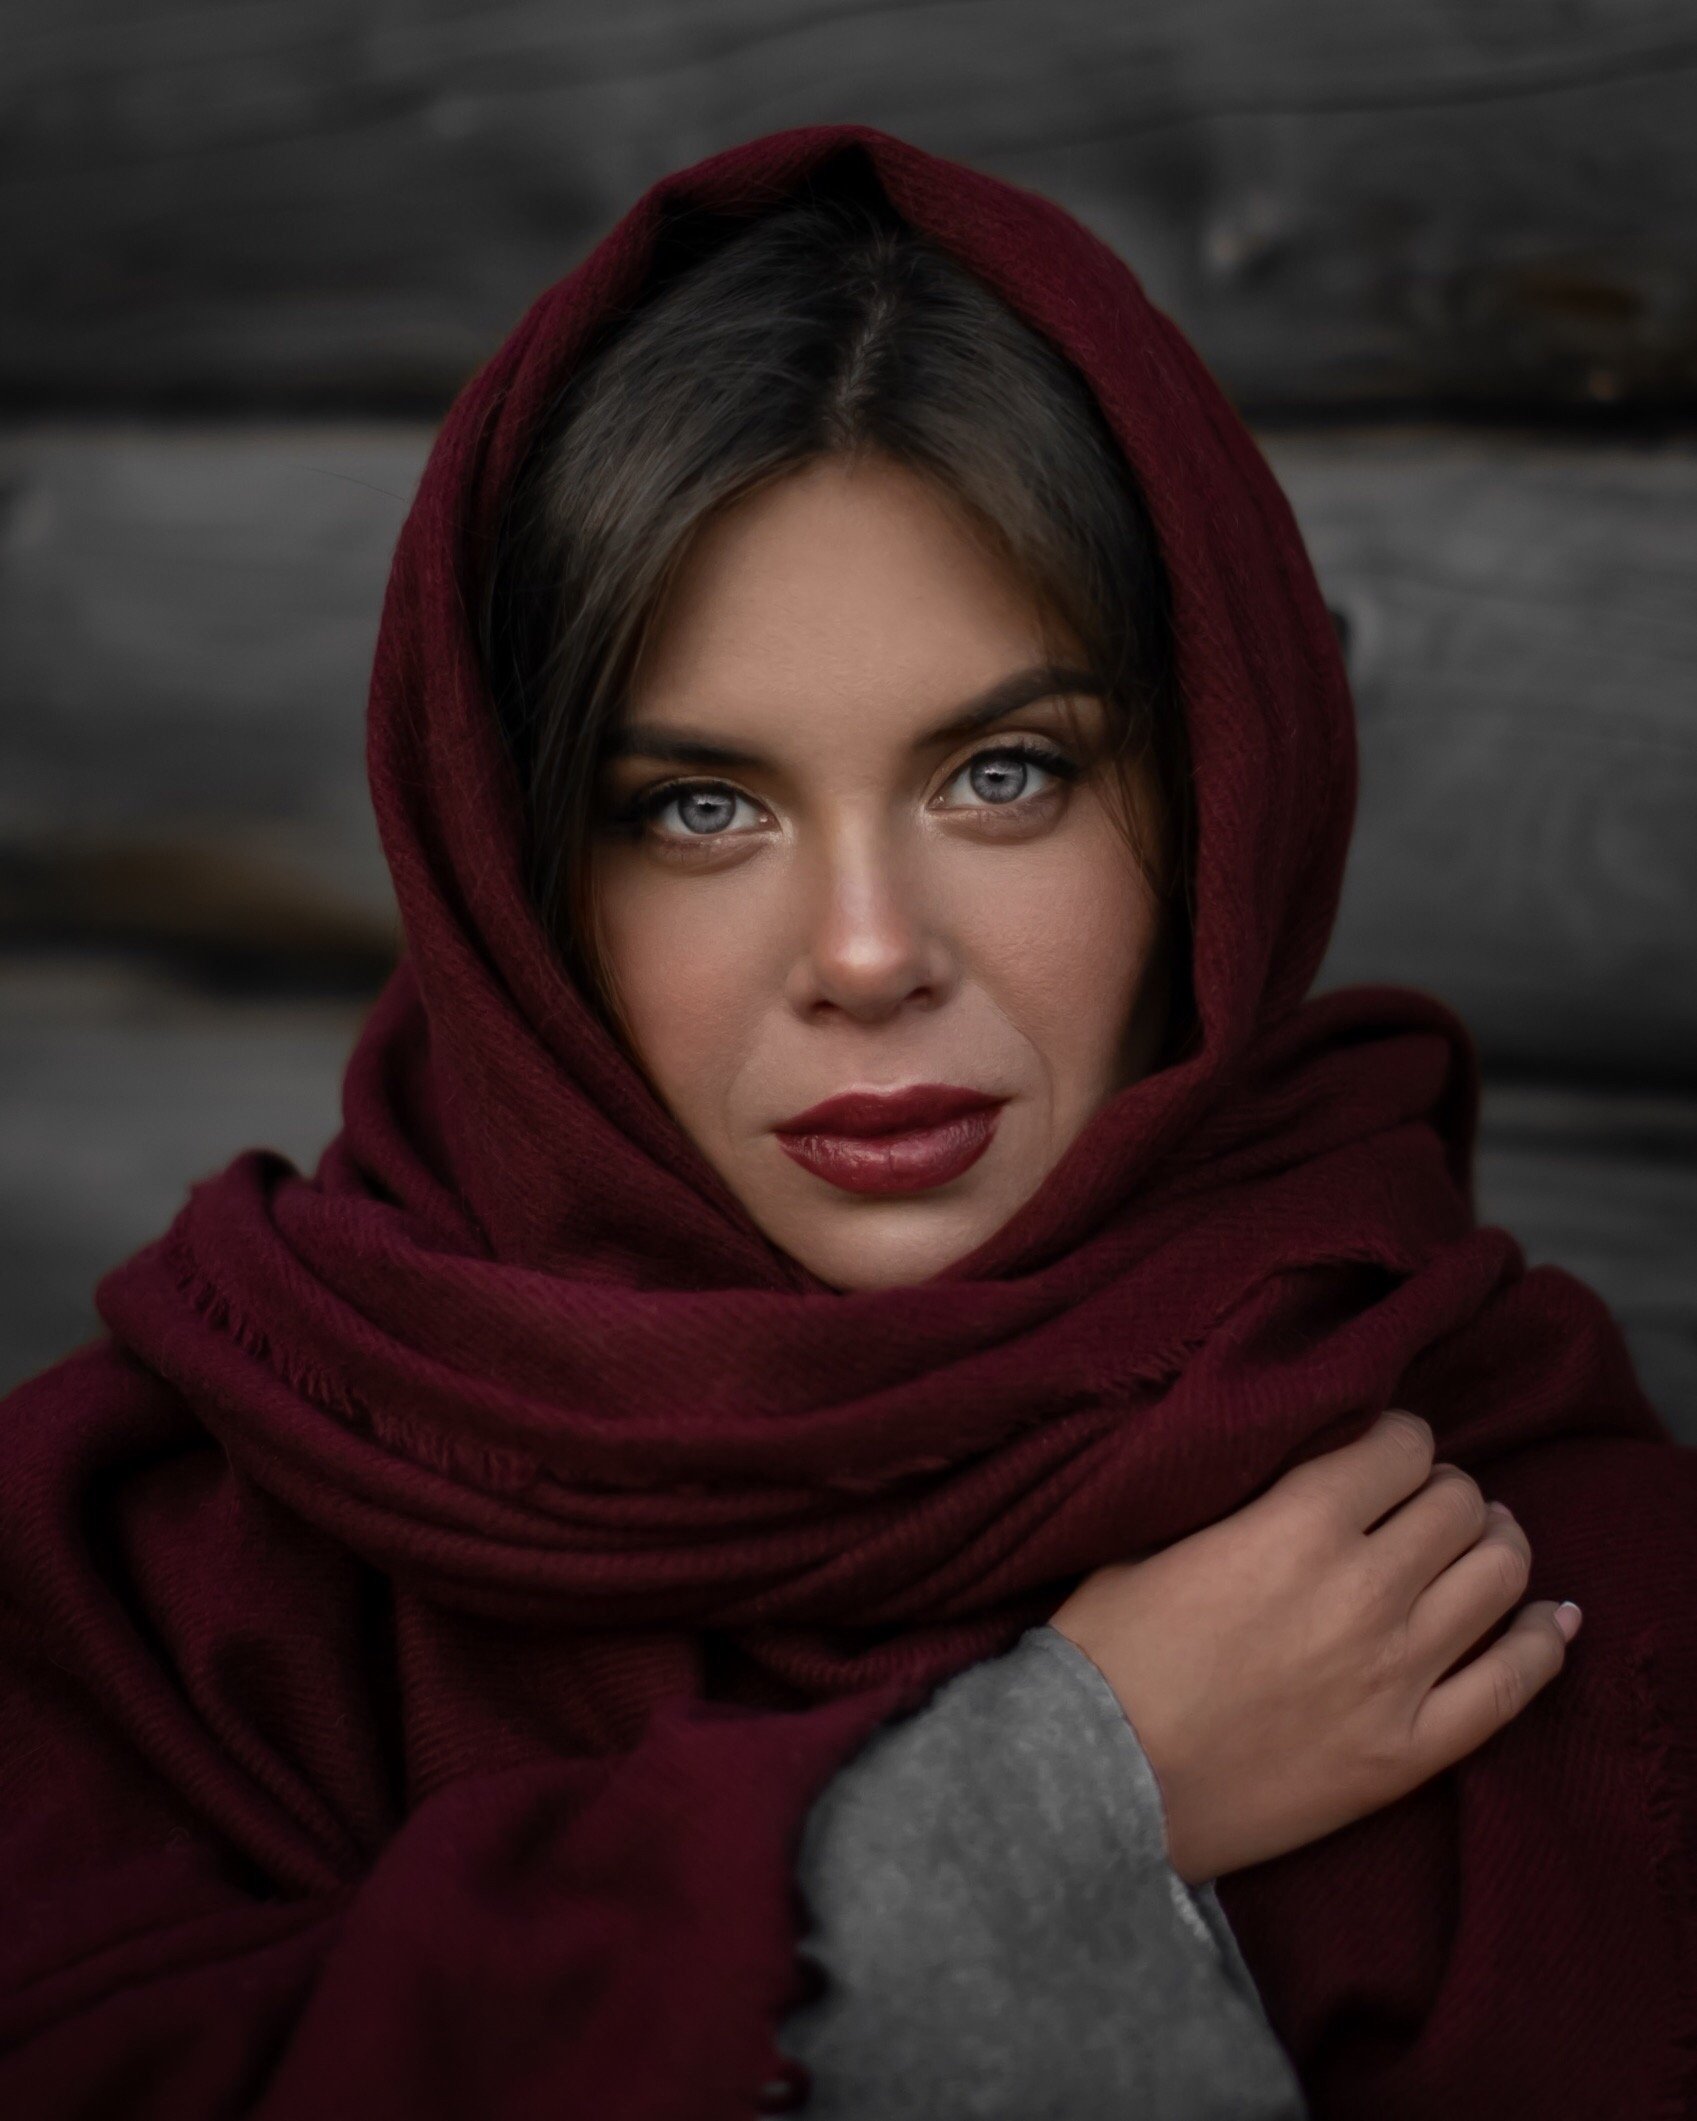 женский портрет woman portrait photography photo russian photography деревня глубинка, Ирина Валь